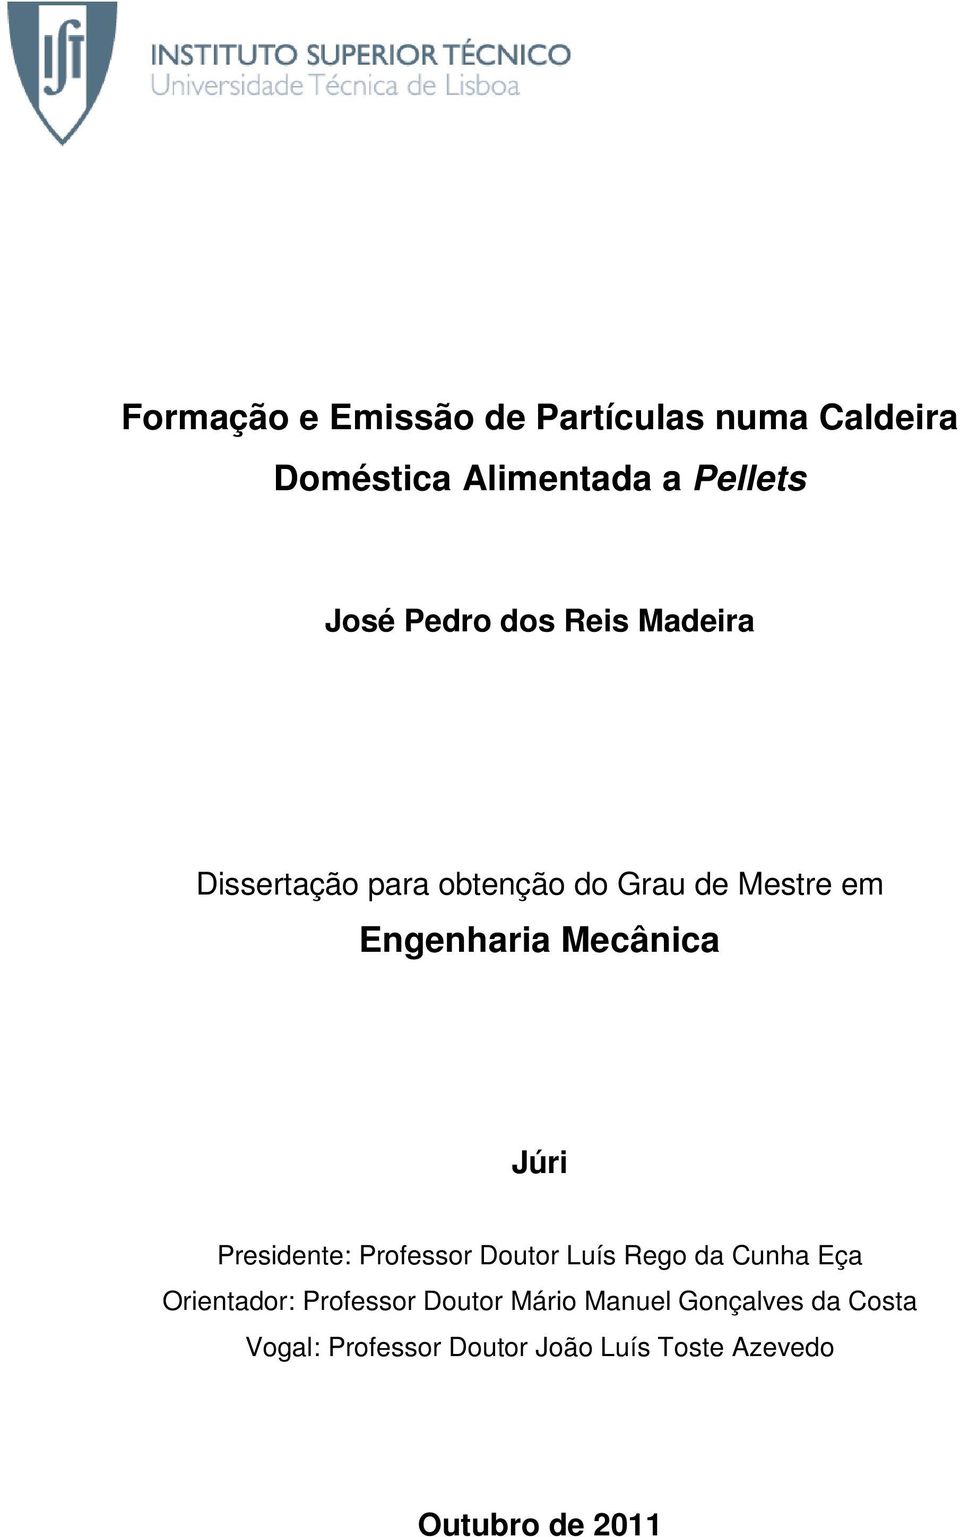 Presidente: Professor Doutor Luís Rego da Cunha Eça Orientador: Professor Doutor Mário